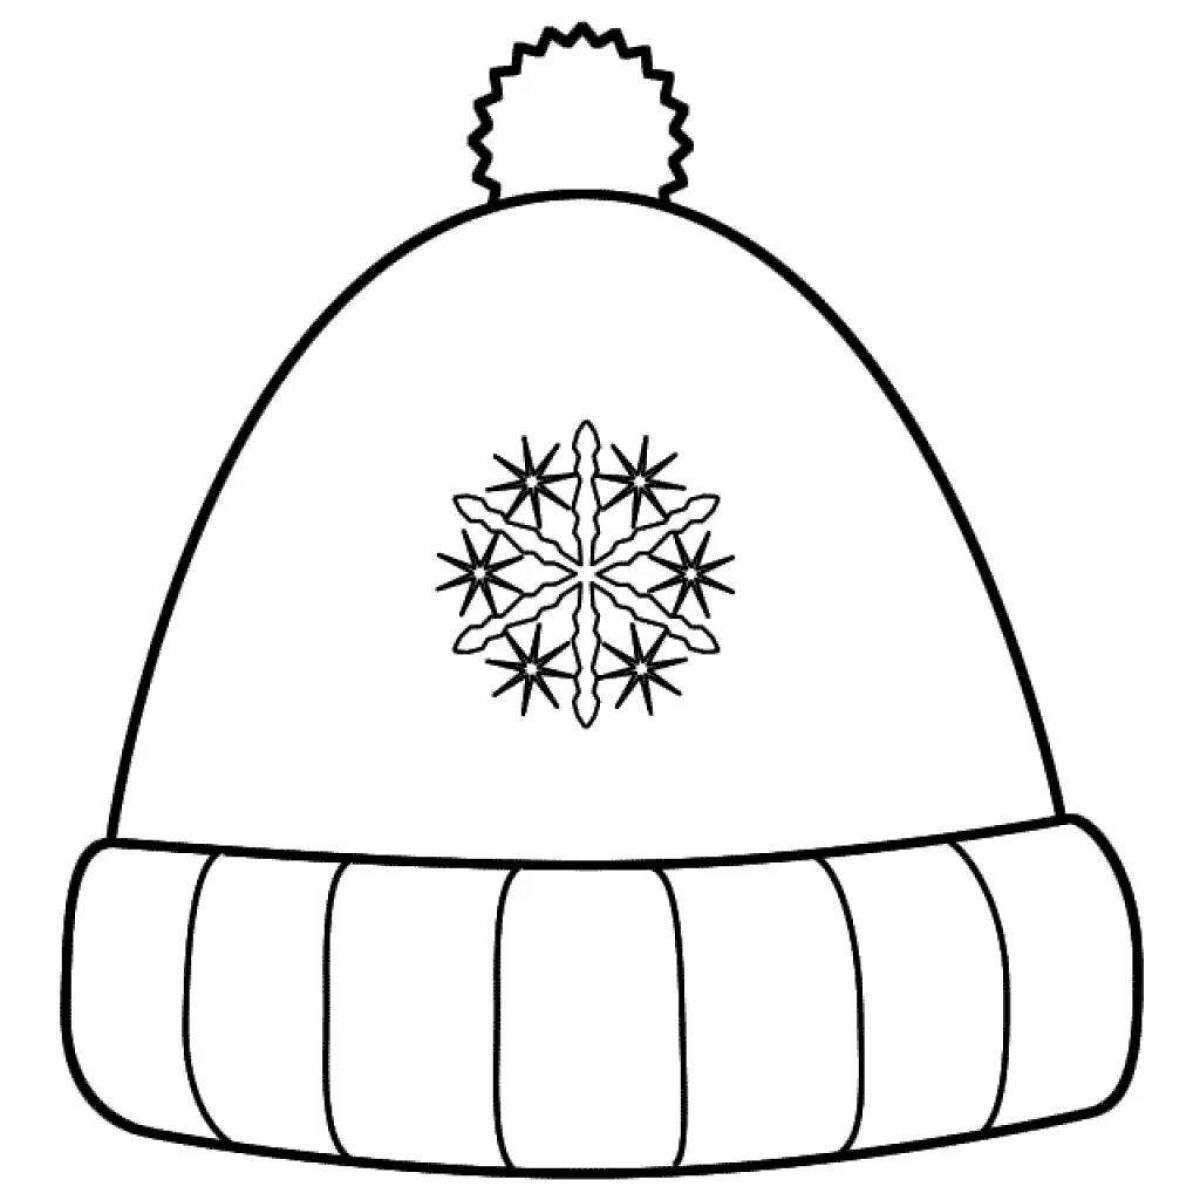 Зимняя шапка раскраска для детей